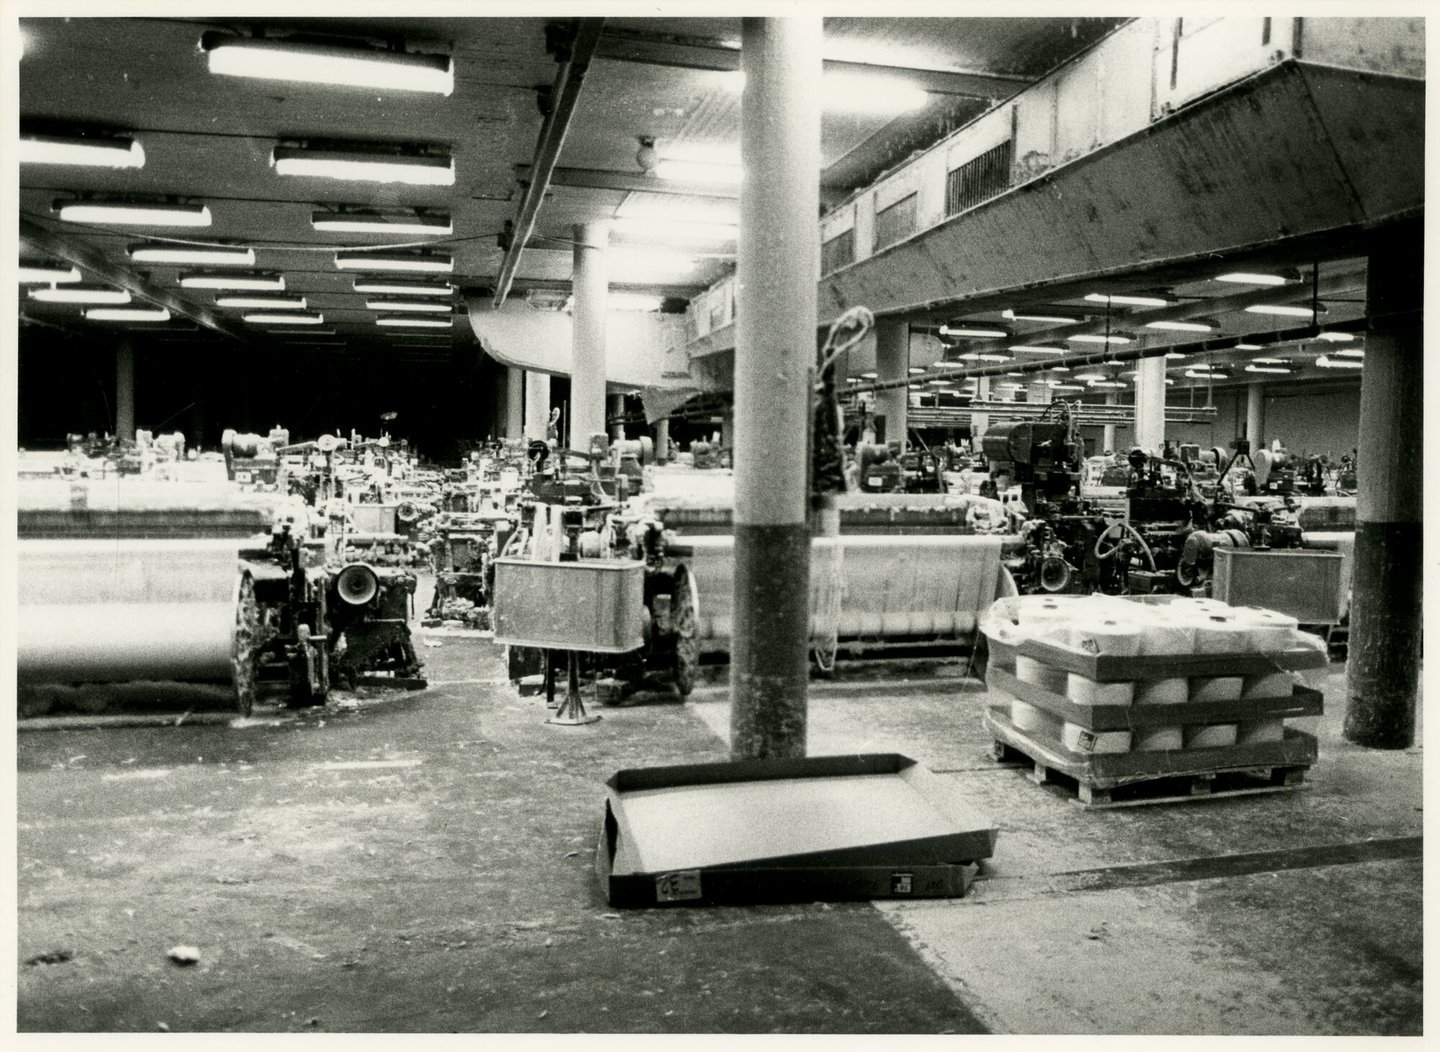 Binnenzicht van weverij textielfabriek De Porre in Gent